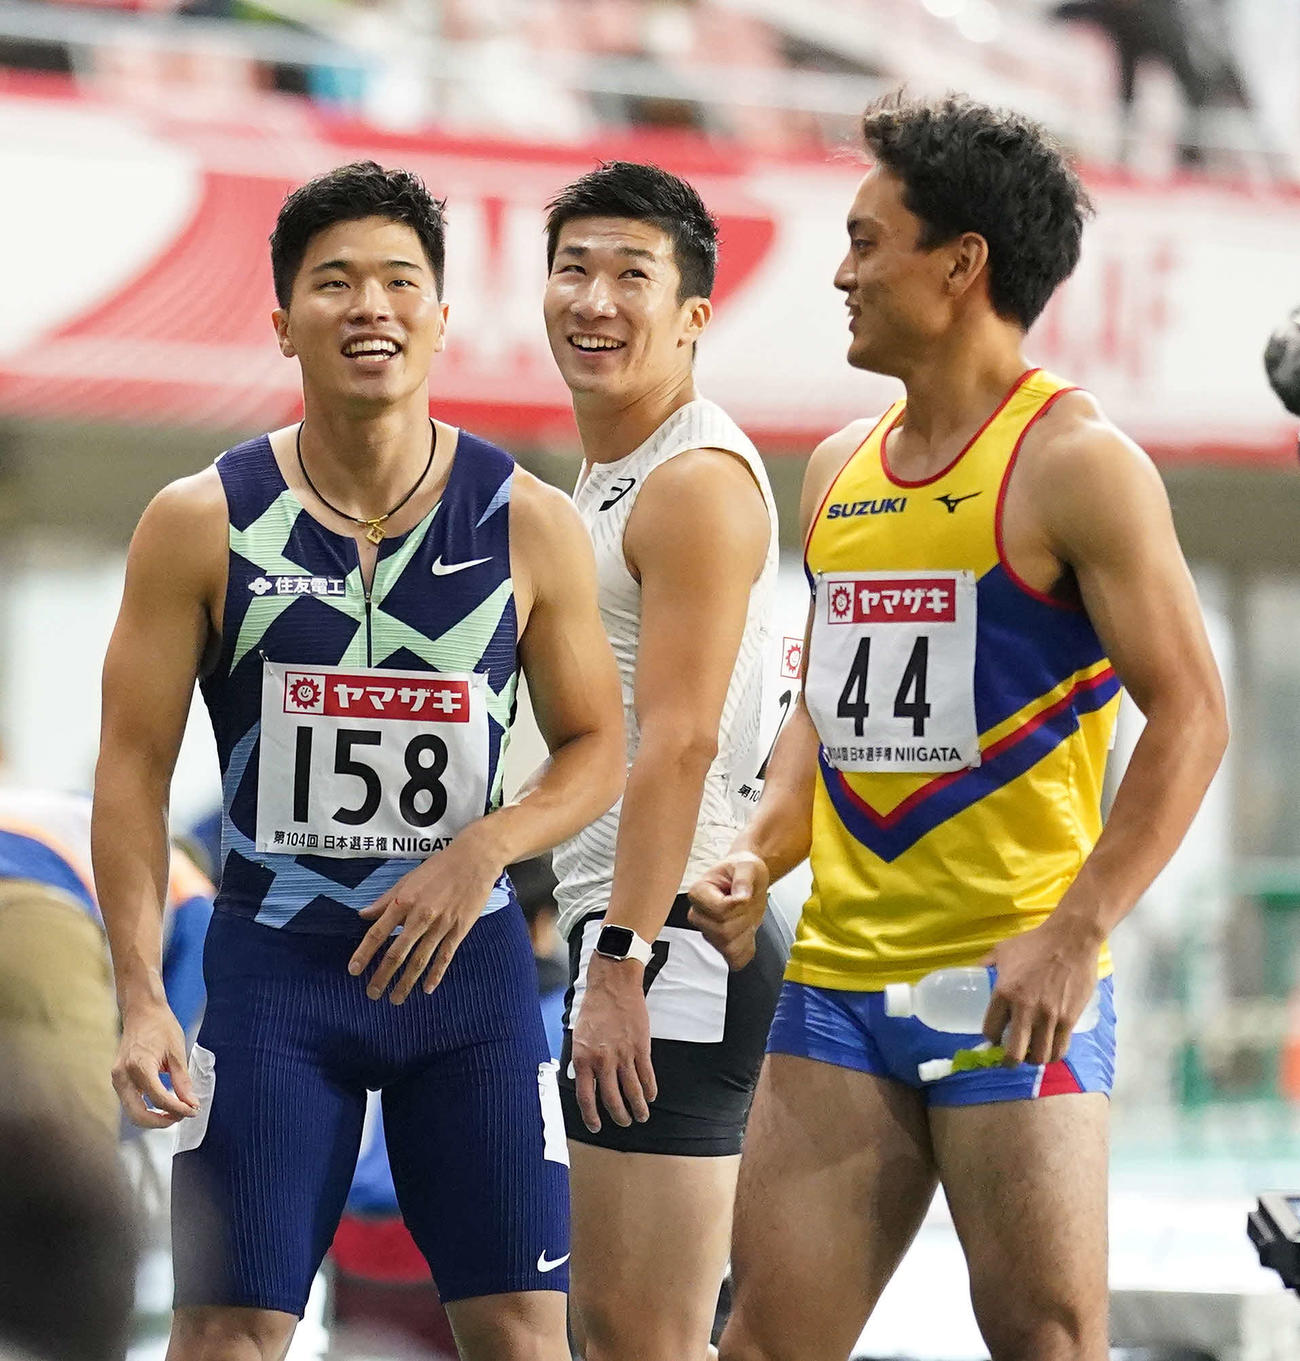 男子100メートル準決勝で1着となり決勝進出の桐生（中央）。左は2着の小池、右は3着の竹田（撮影・江口和貴）